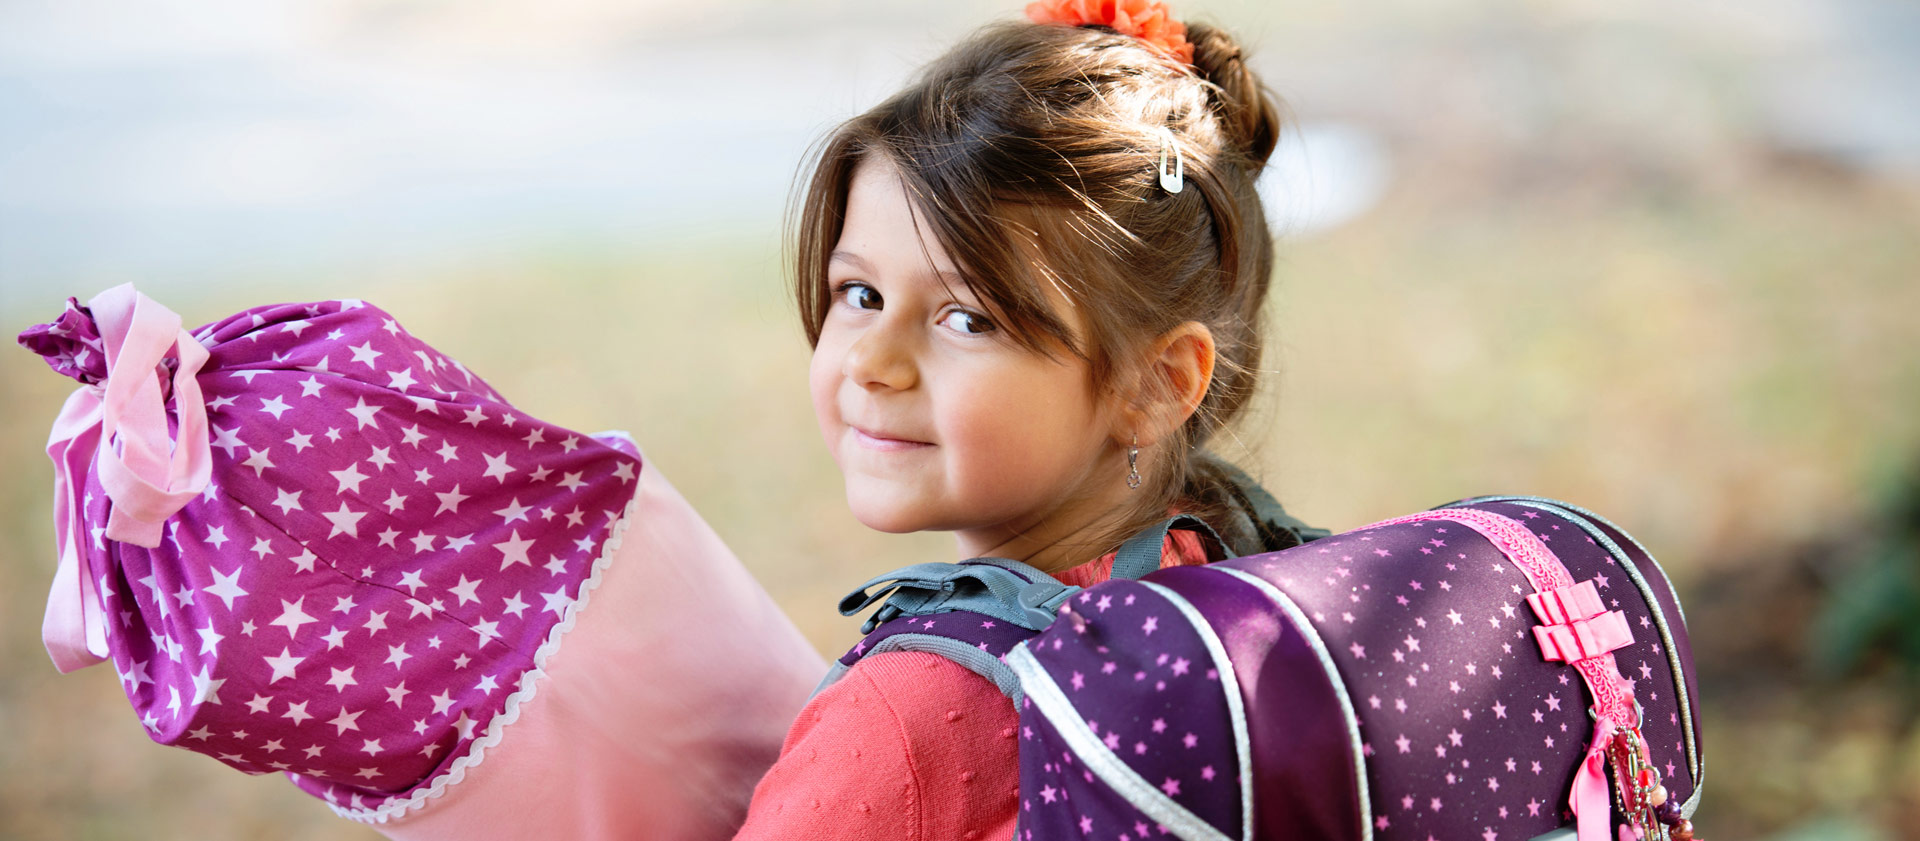 Schulfotografie: Ein Mädchen mit Schultüte und Schulranzen wartet auf die Einschulung